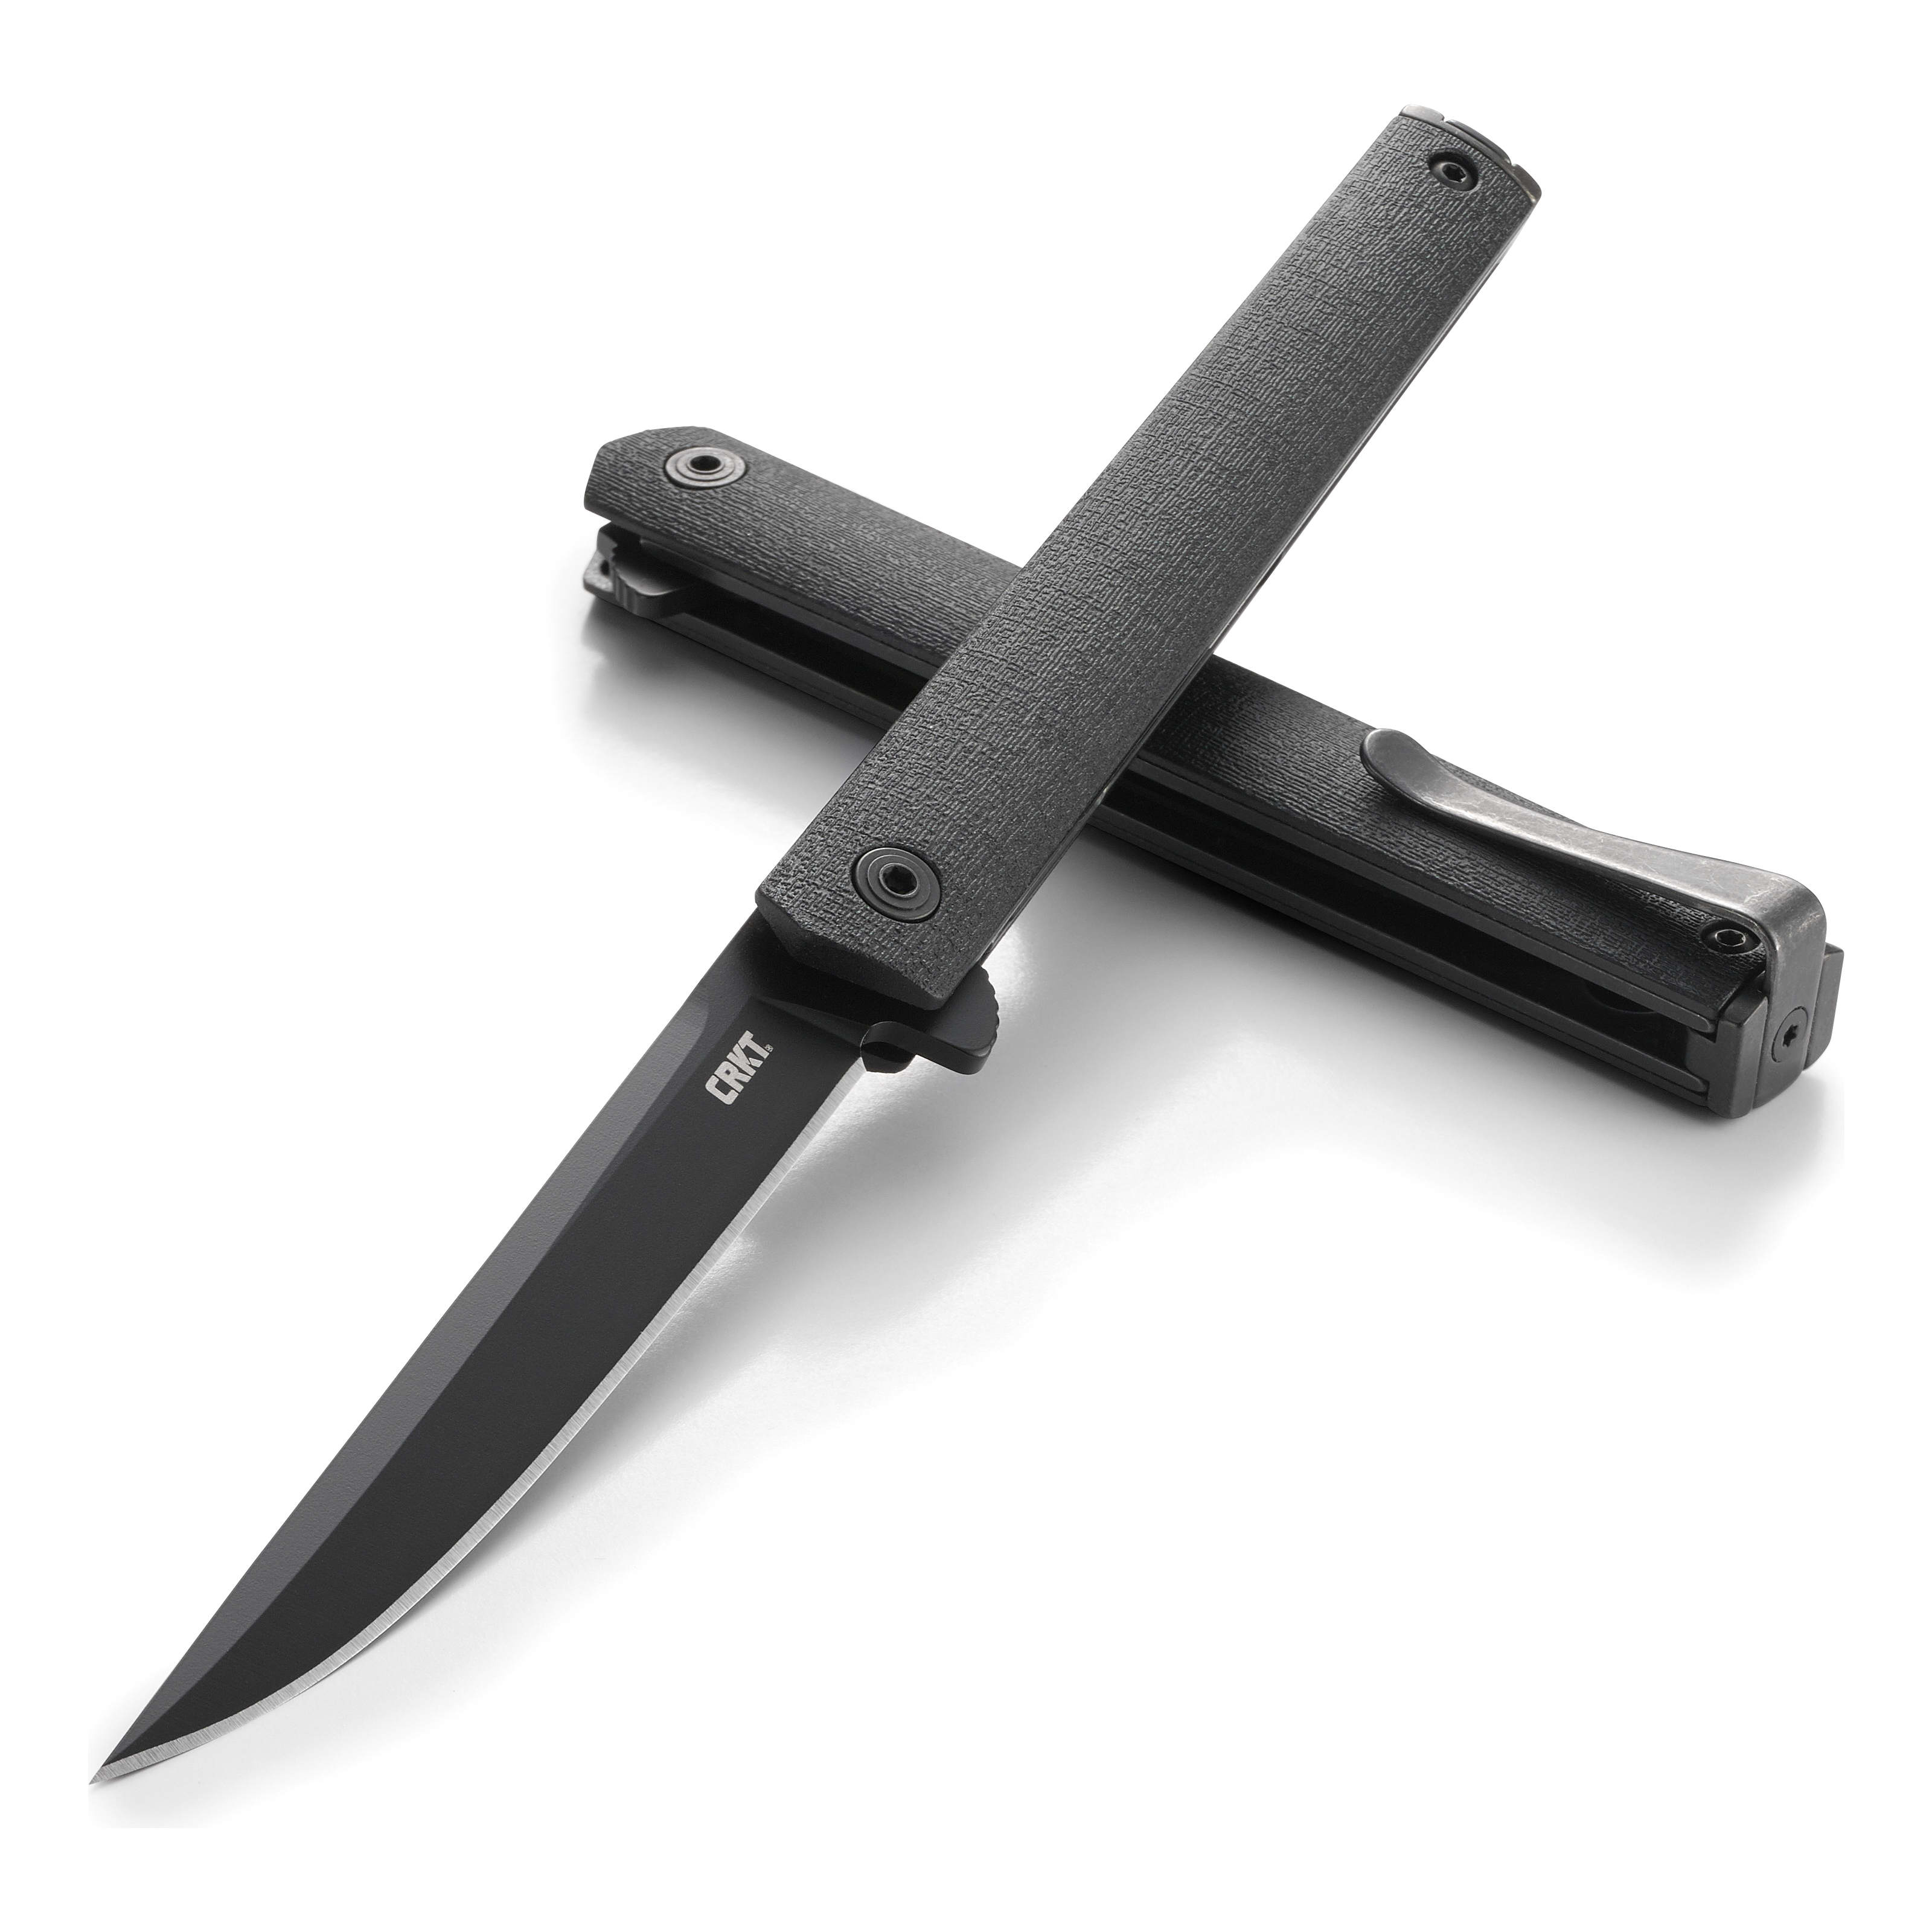 CRKT CEO™ Flipper Blackout Folding Knife